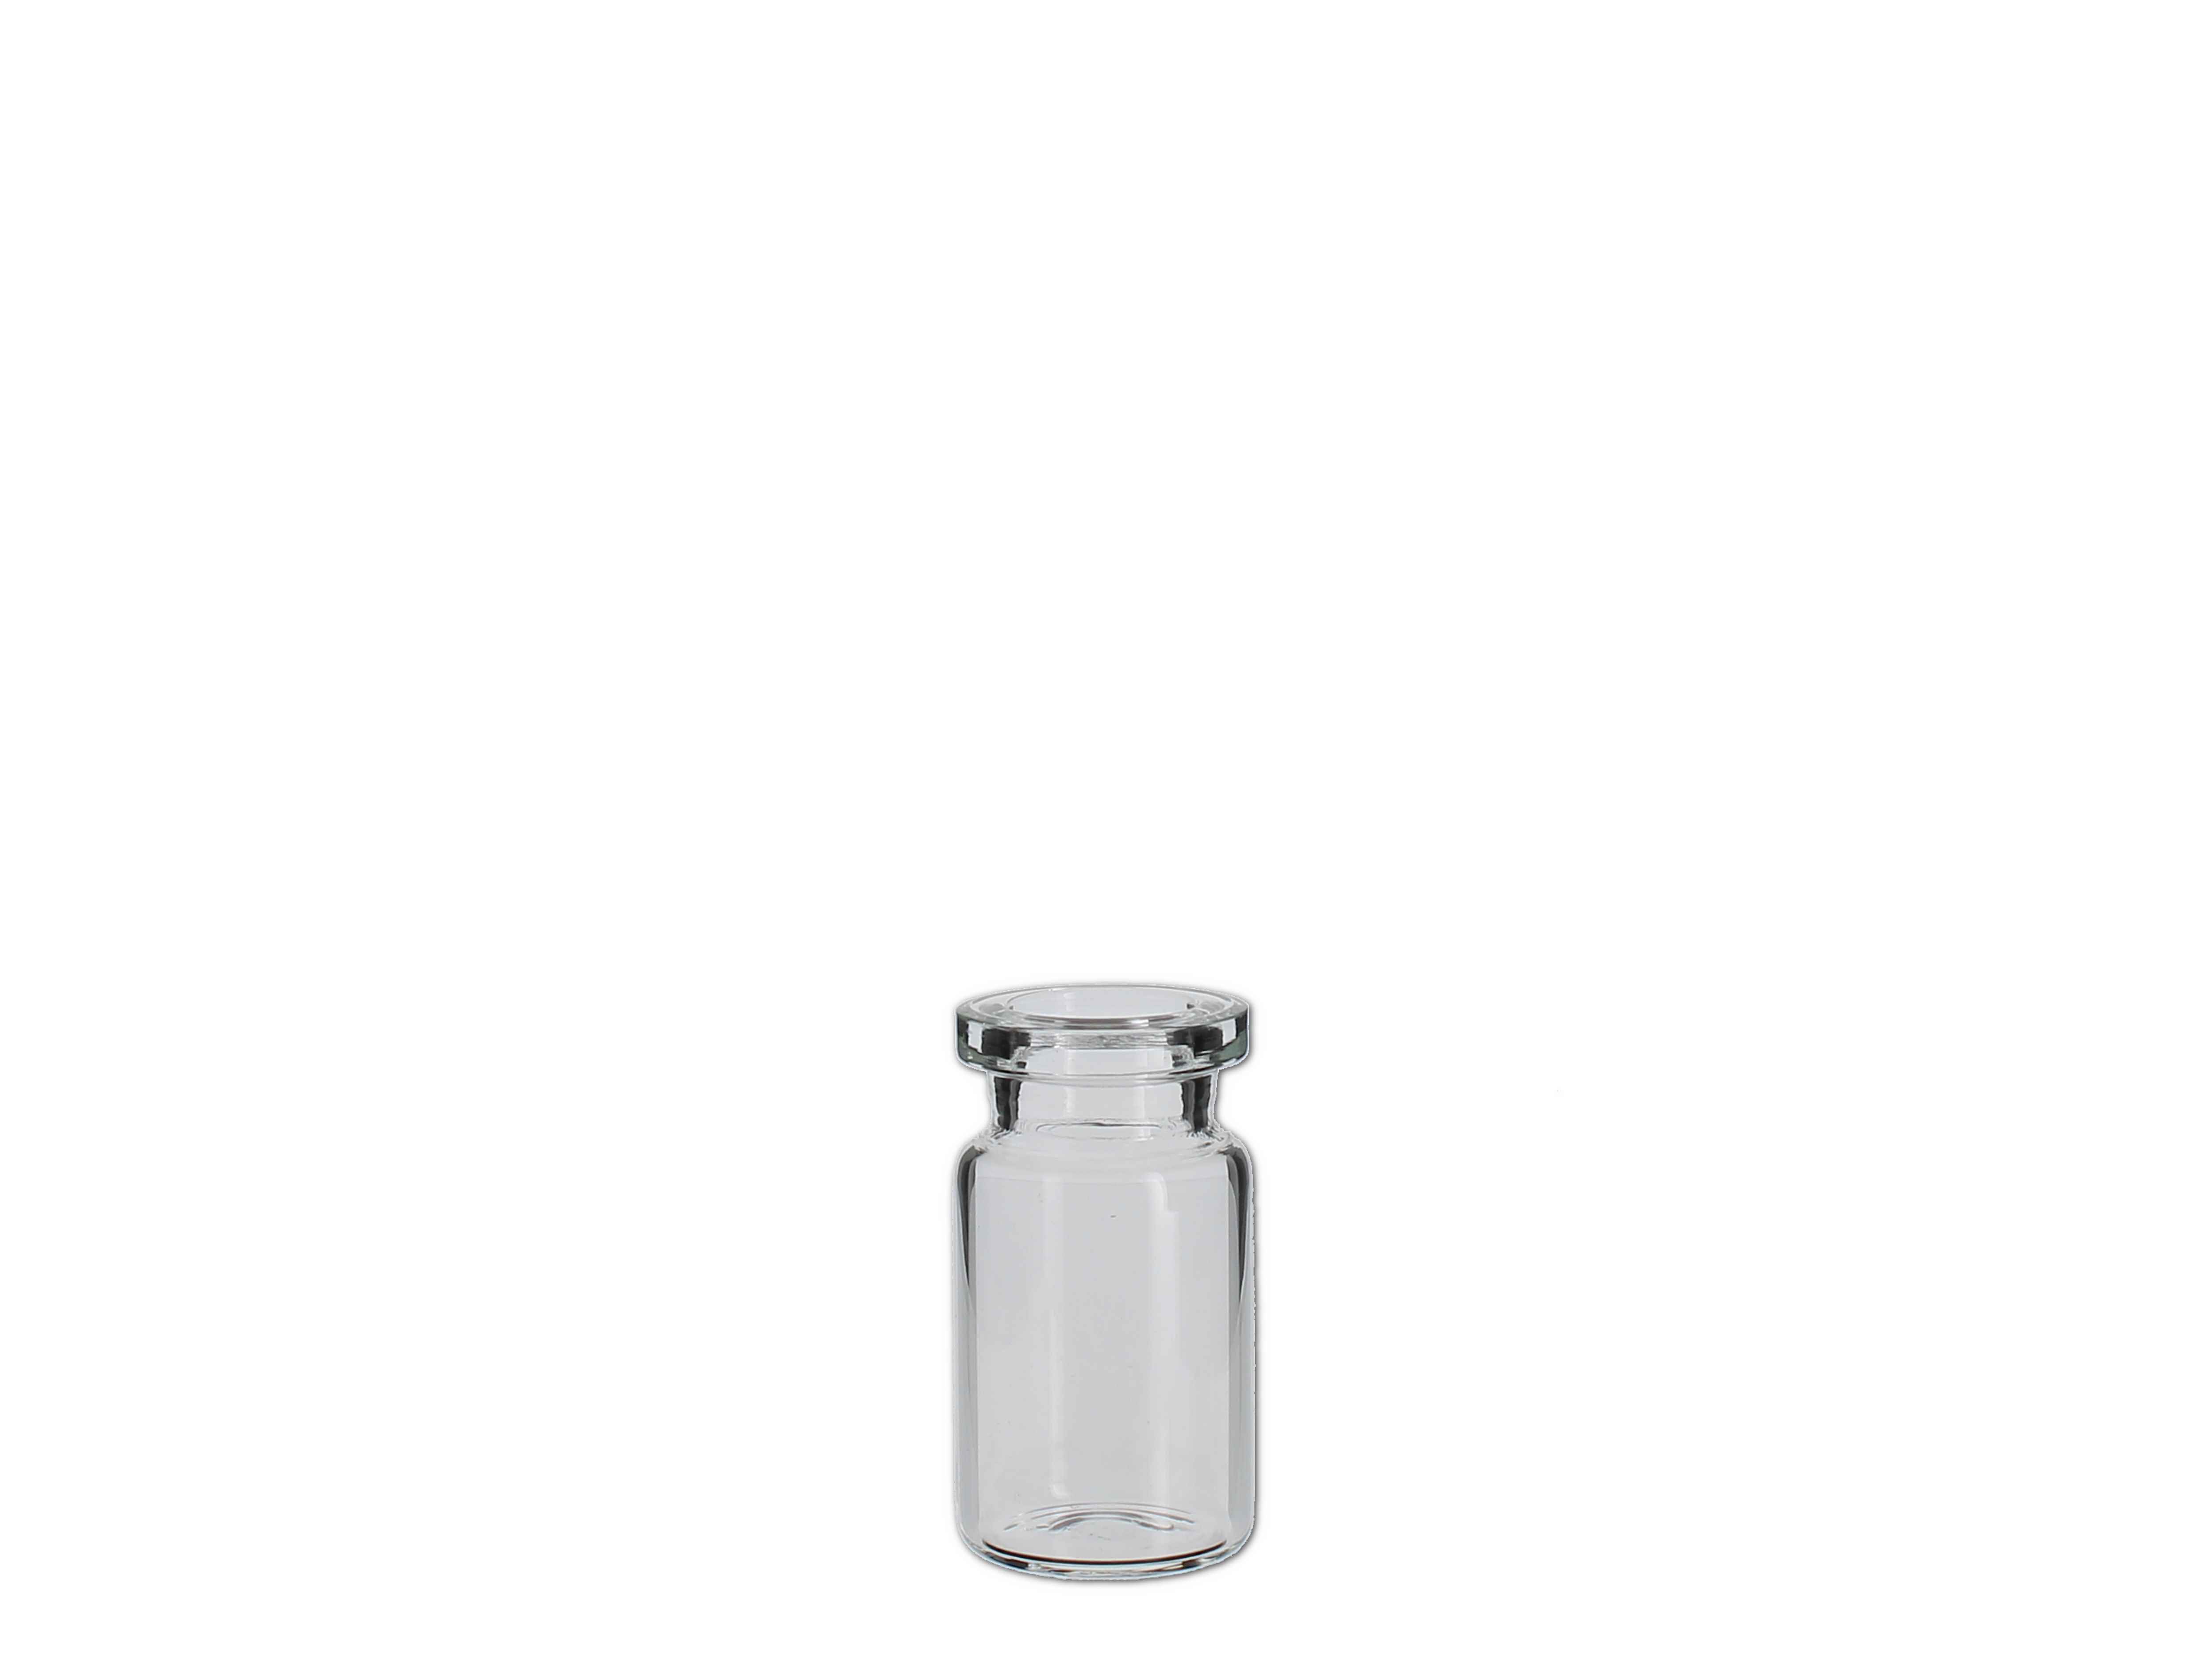    Impfstoff-Flasche weiß (Röhre) - 5ml